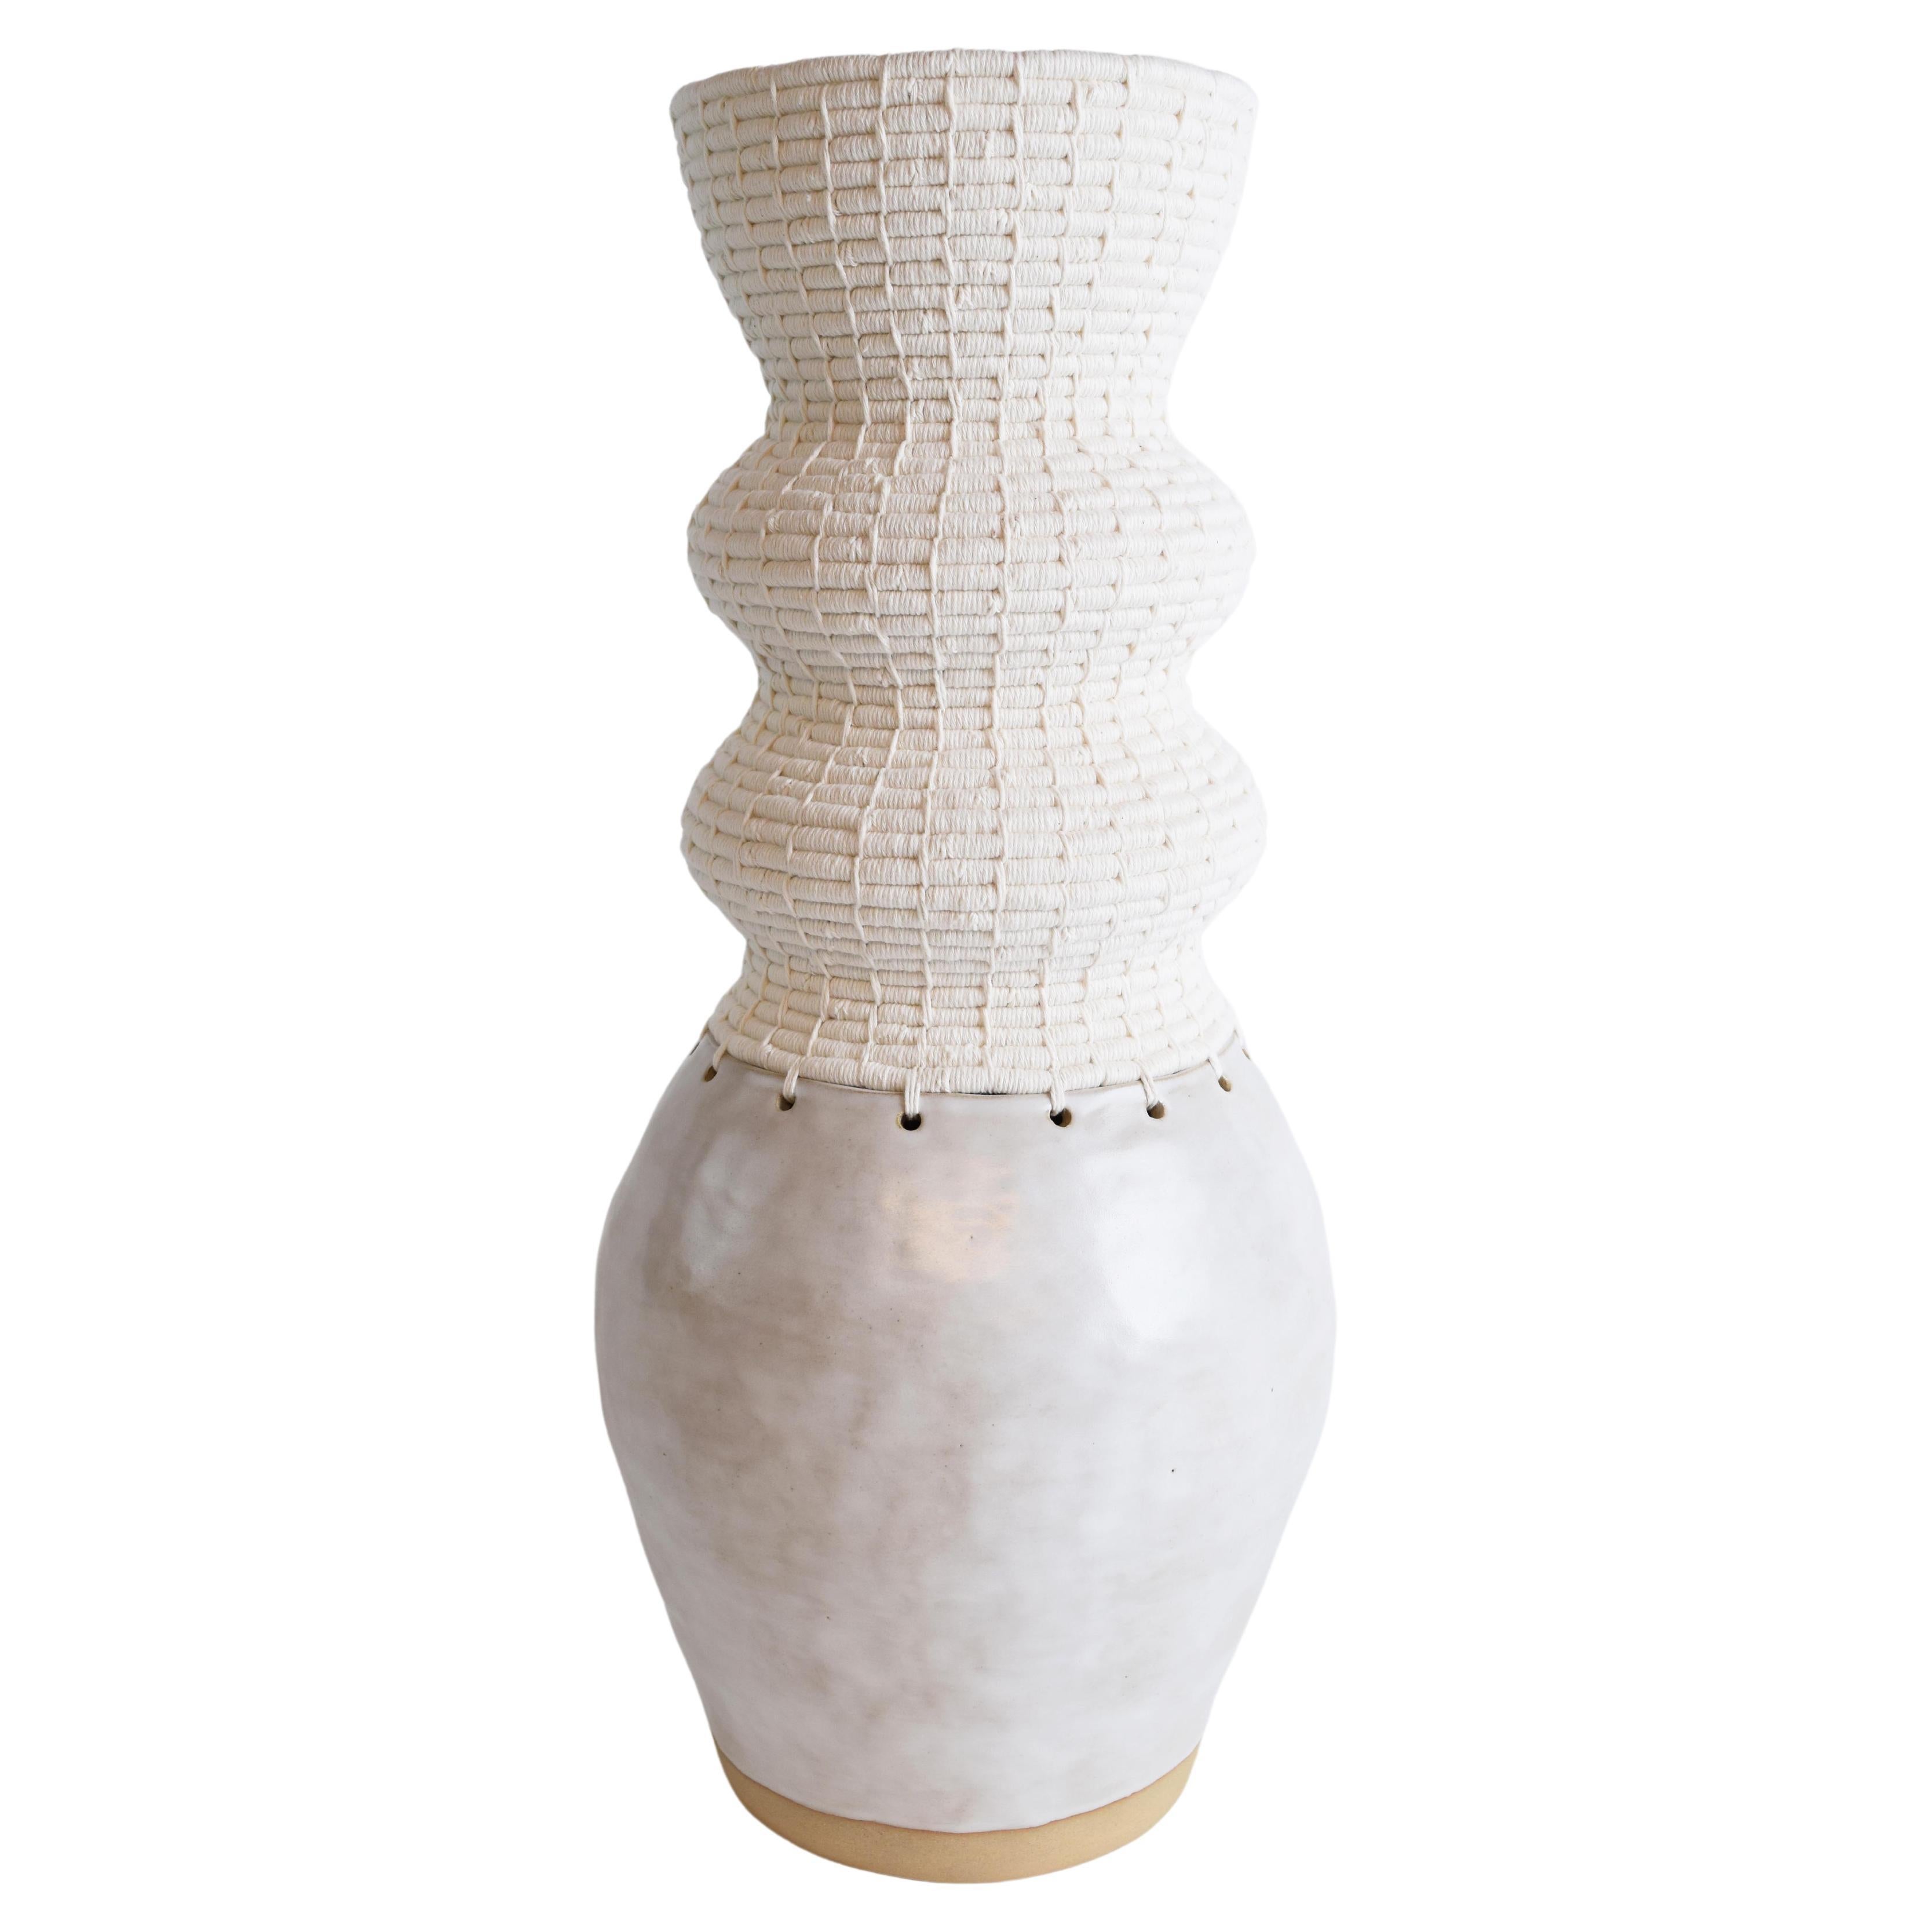 One of a Kind Ceramic & Fiber Vessel #813  - White Glaze and White Woven Cotton